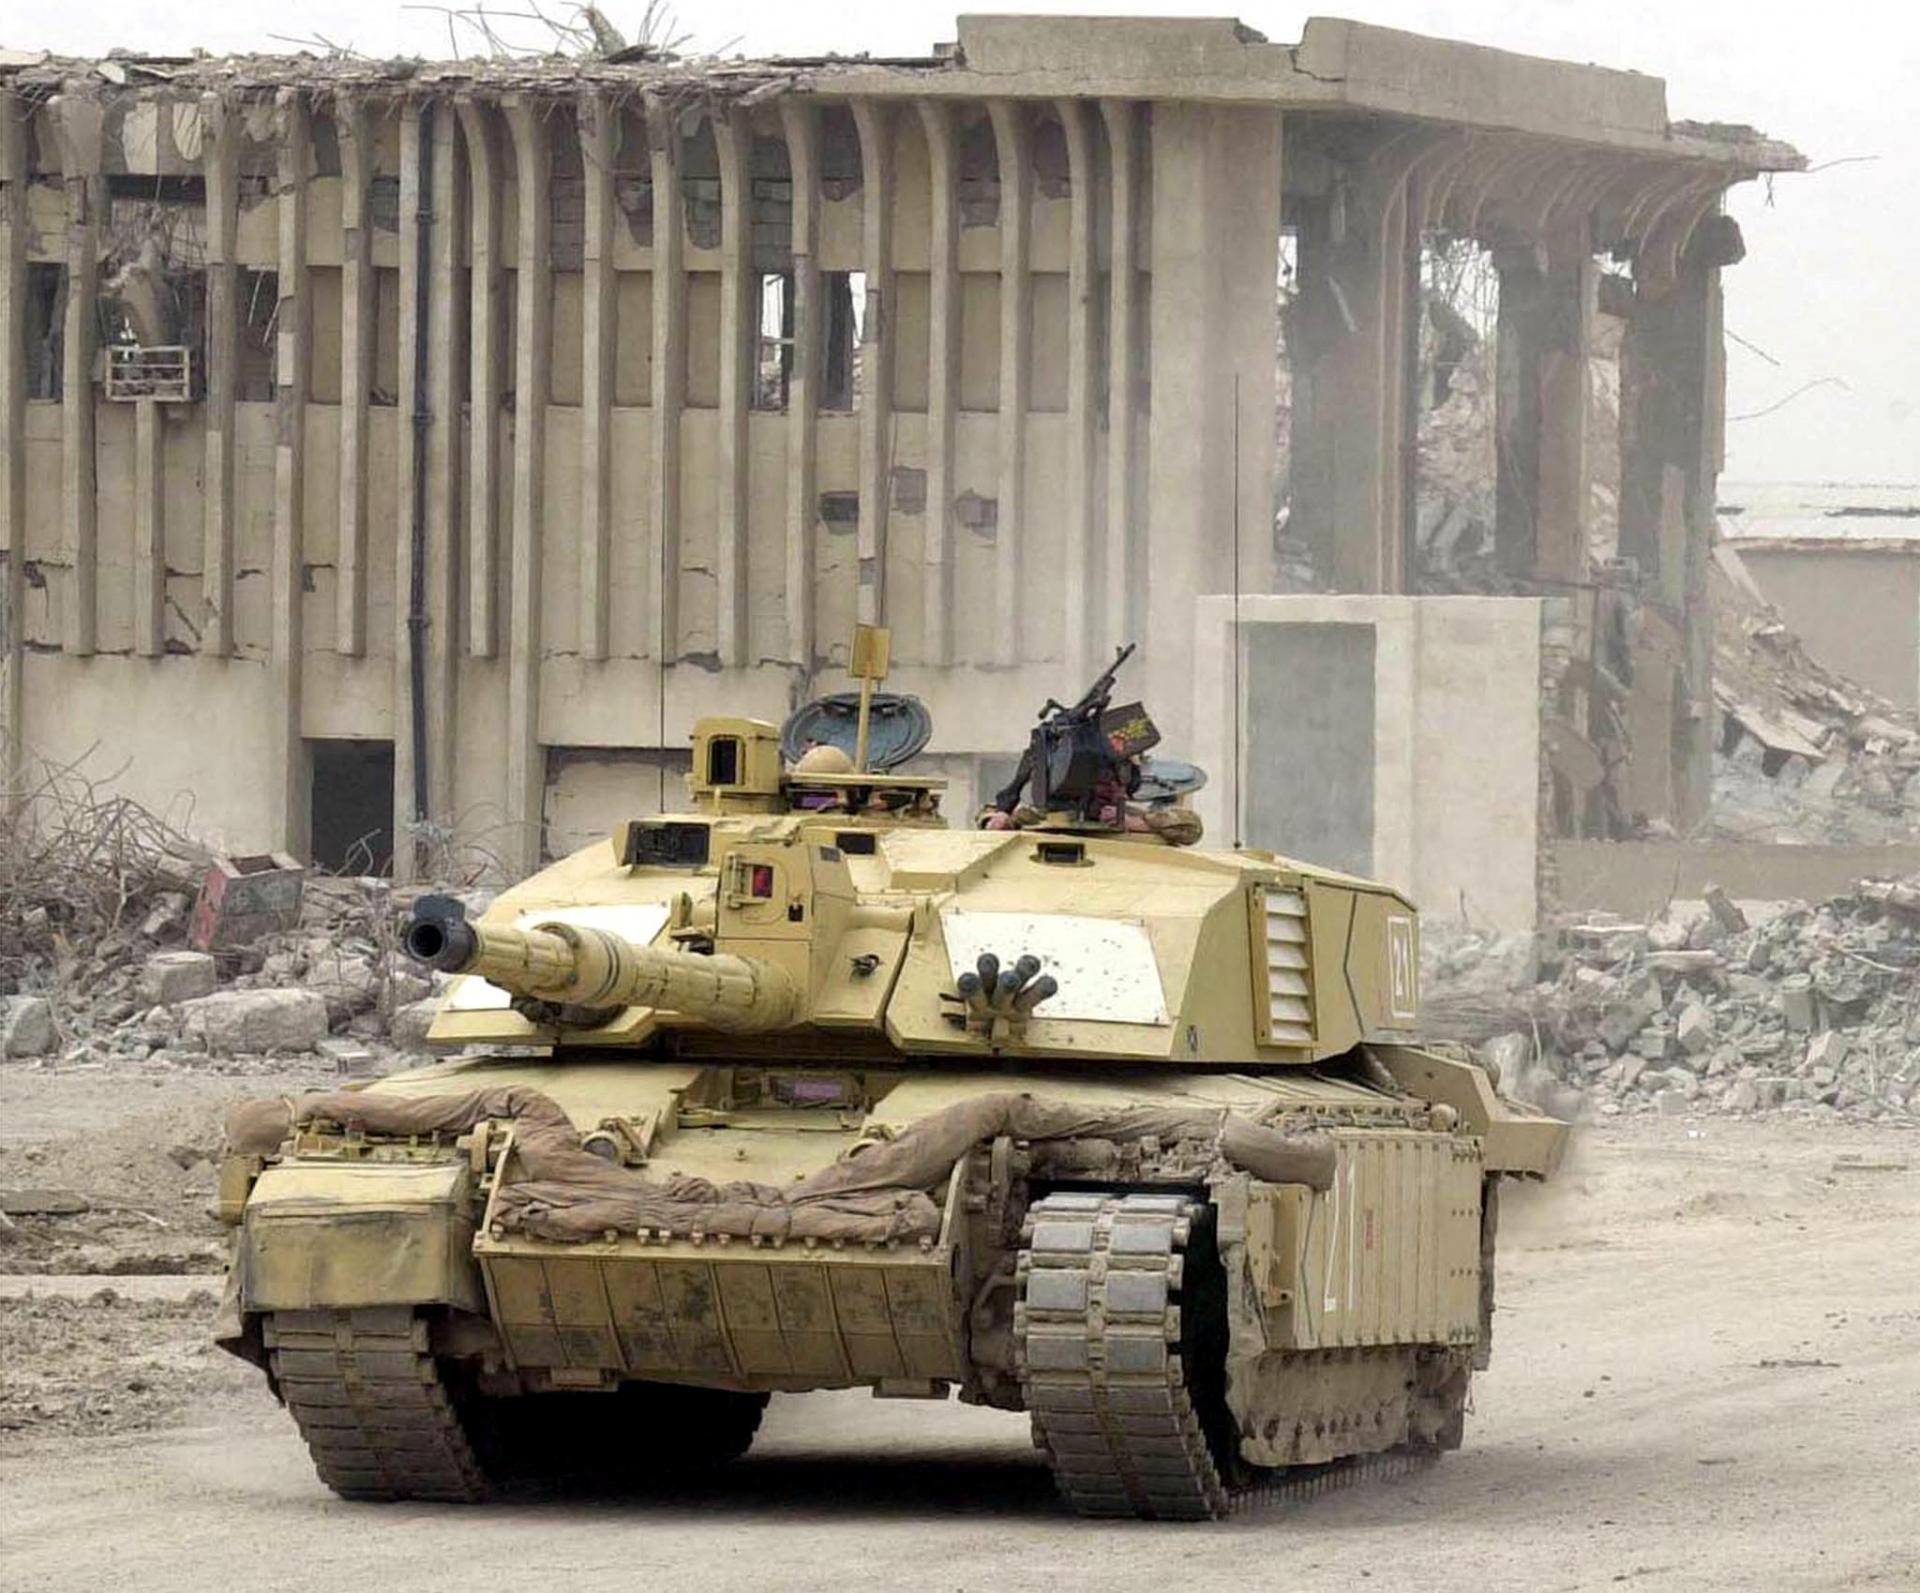 Británia pošle Ukrajine bojové tanky. Stane sa tak prvou západnou krajinou, ktorá tak spraví